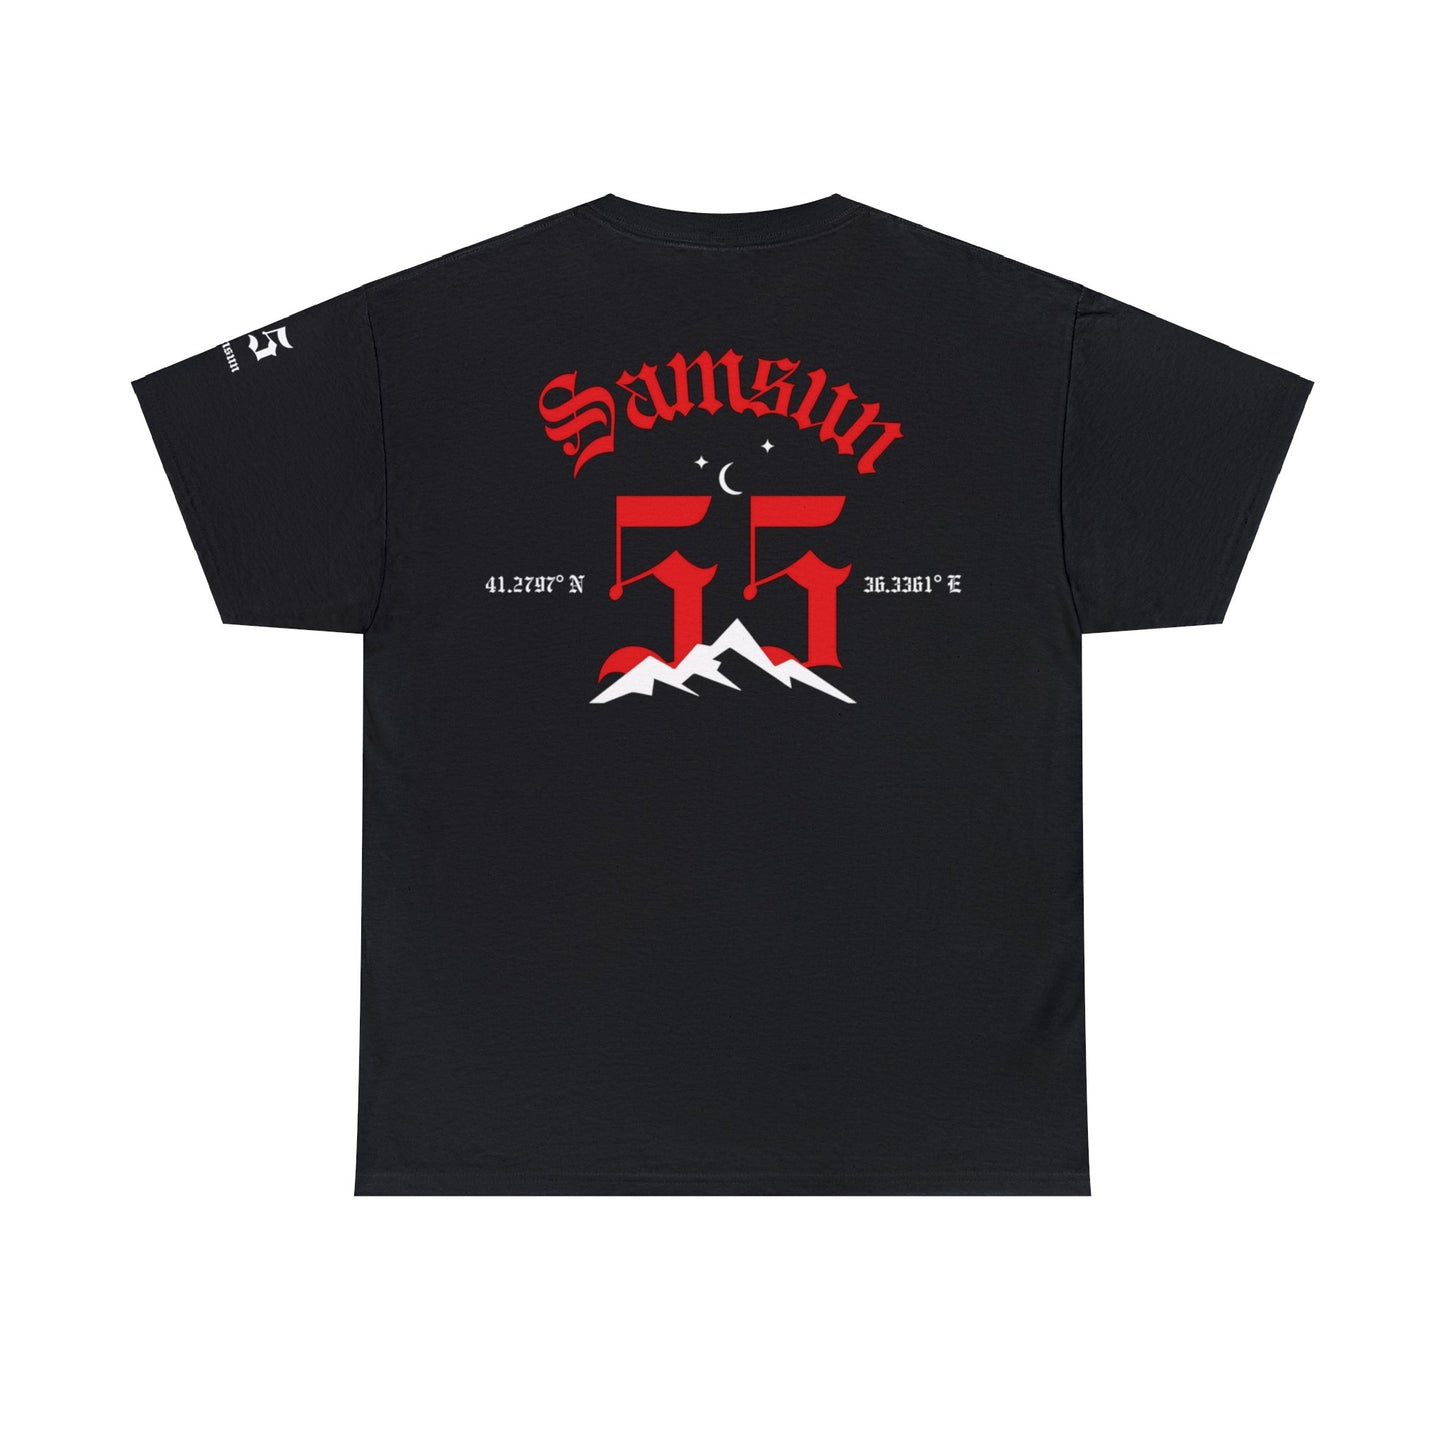 Şehirim - 55 Samsun - T-Shirt - Back Print - Black